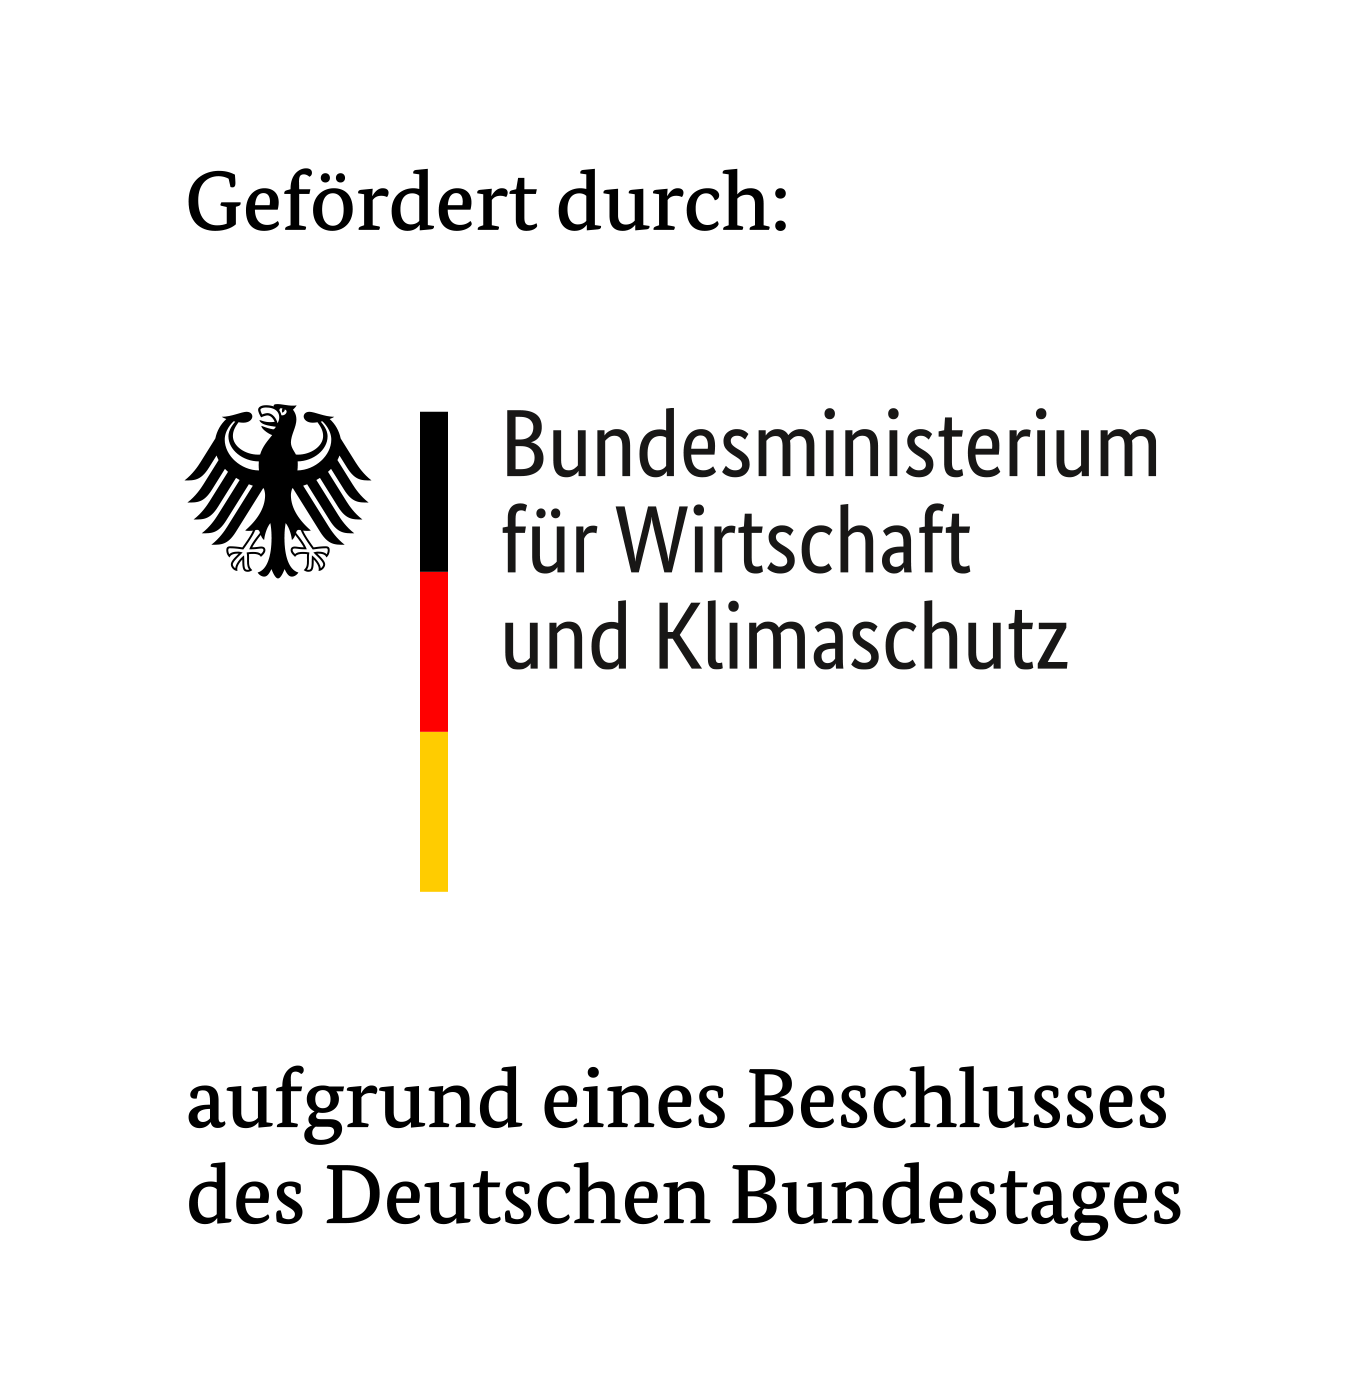 BMWK: Förderung + Bundestag